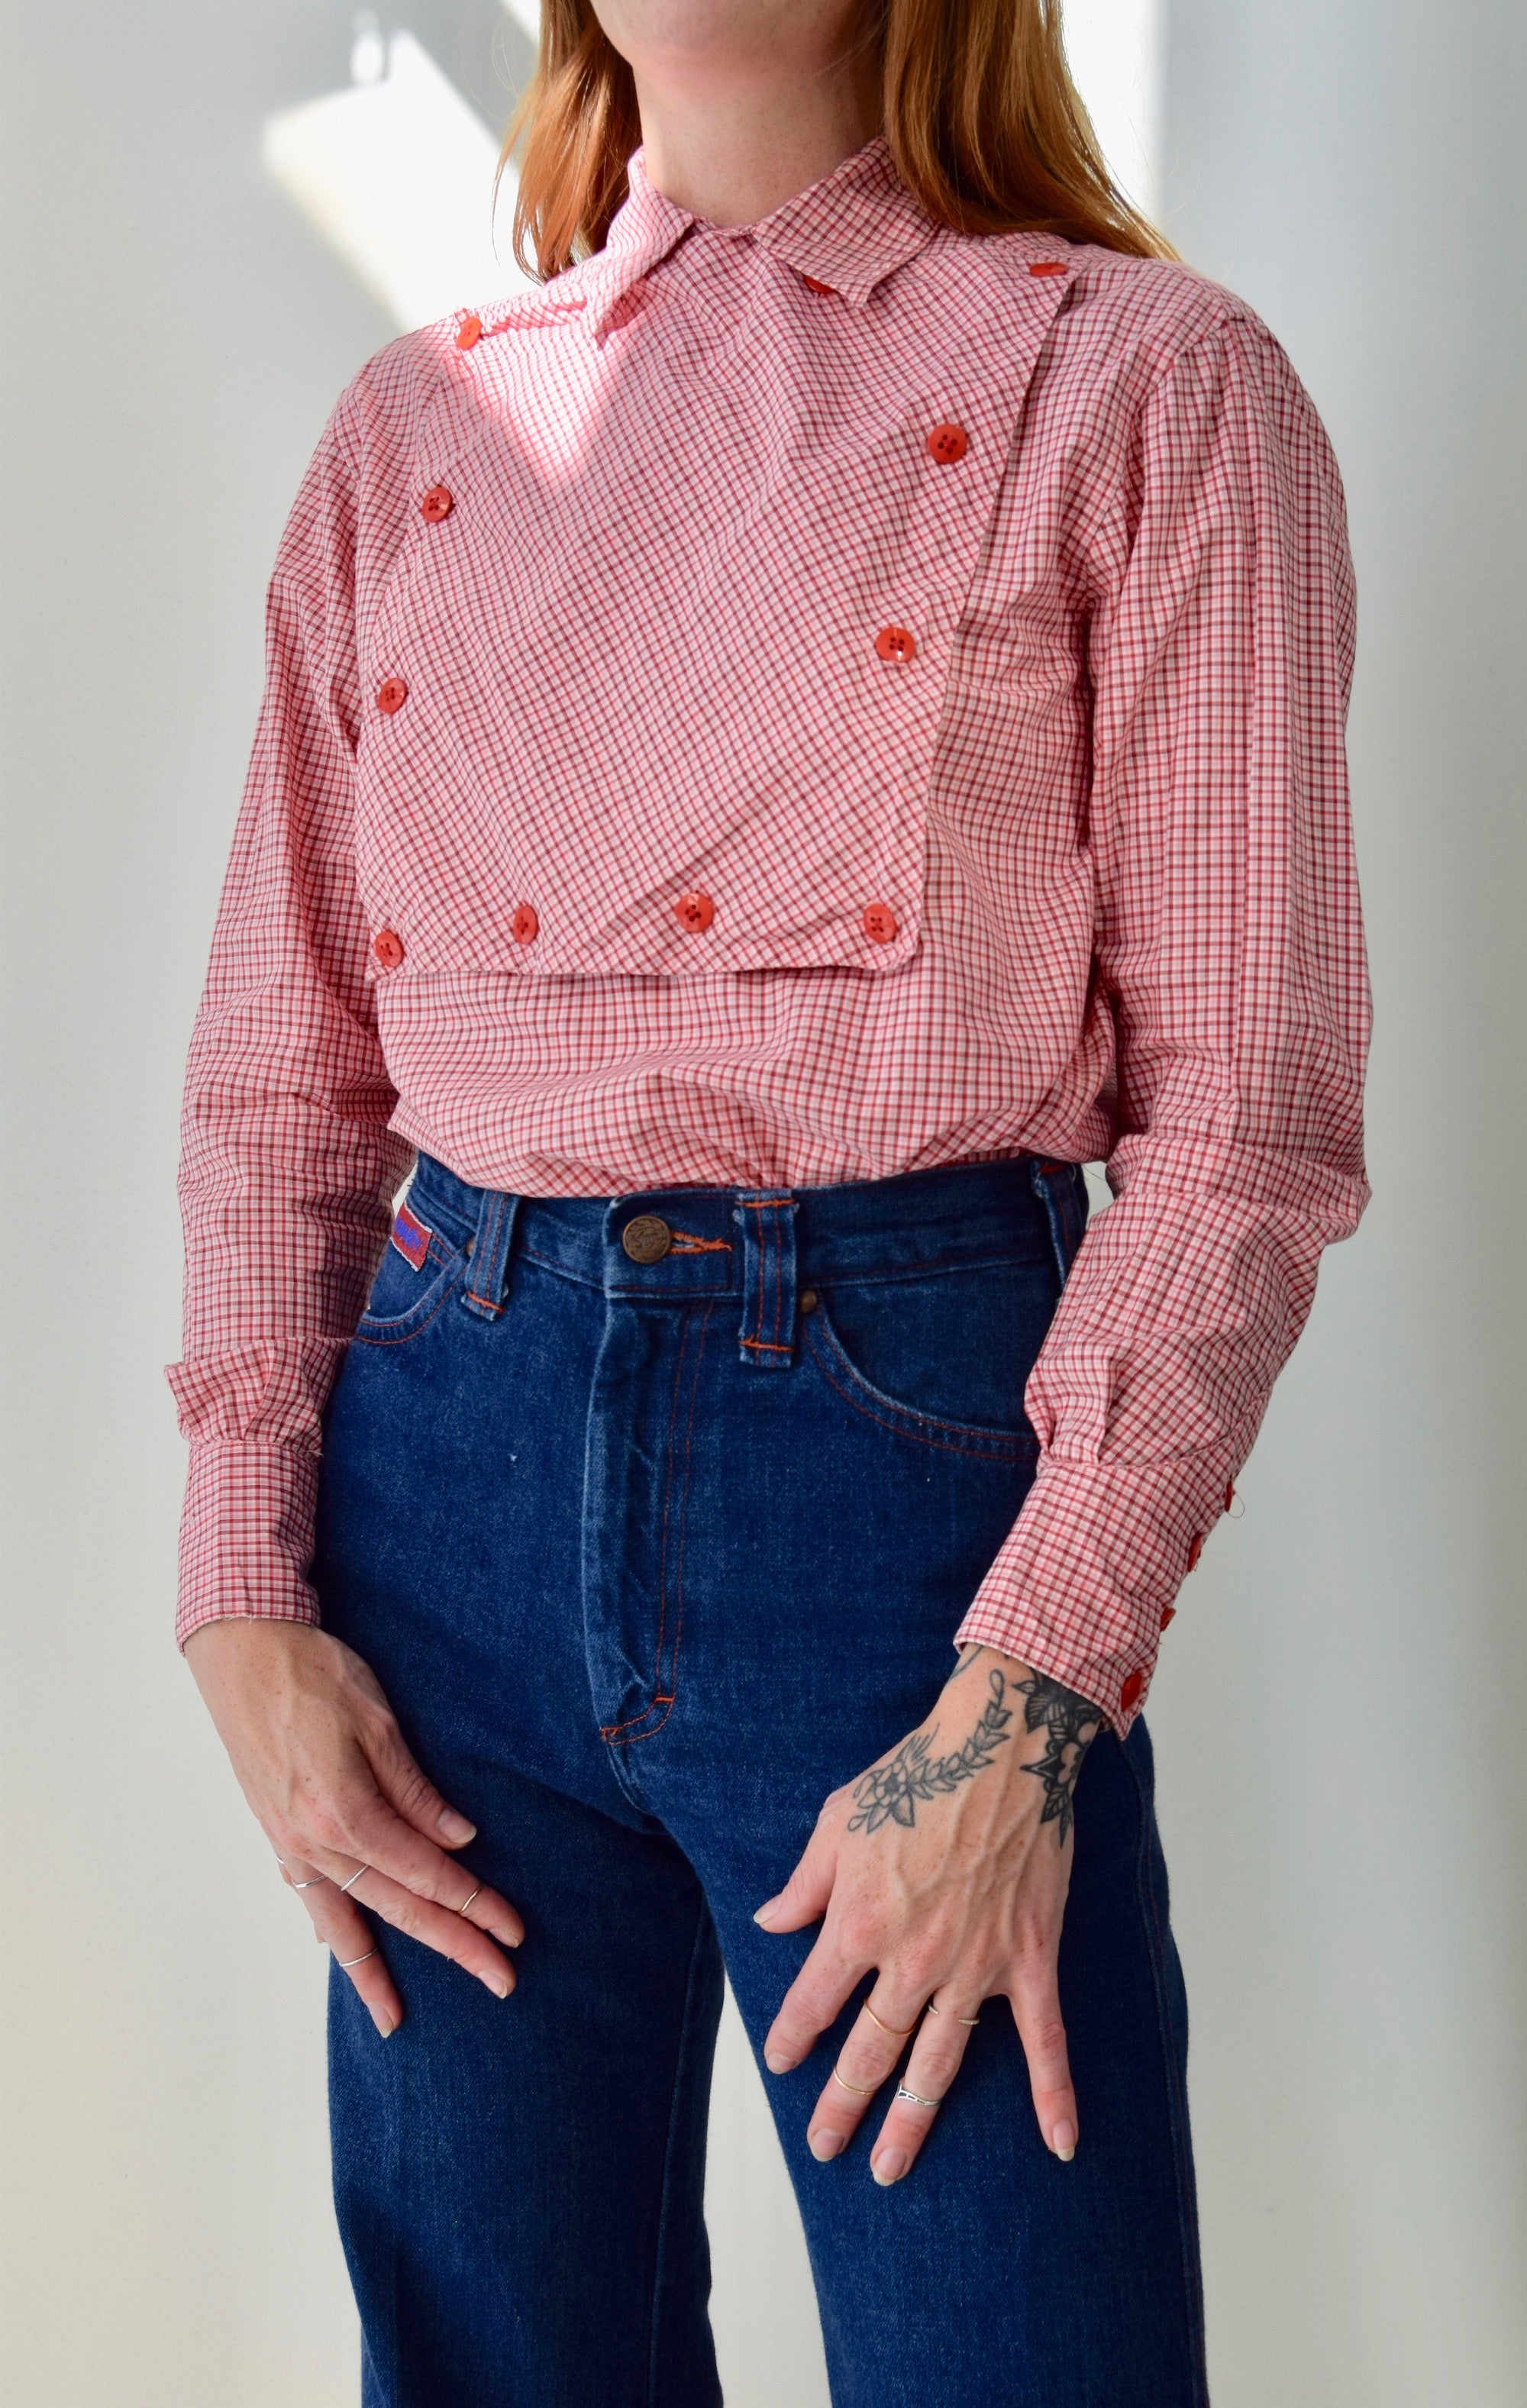 Ladies "Ralph Lauren" Gingham Western Tunic Top